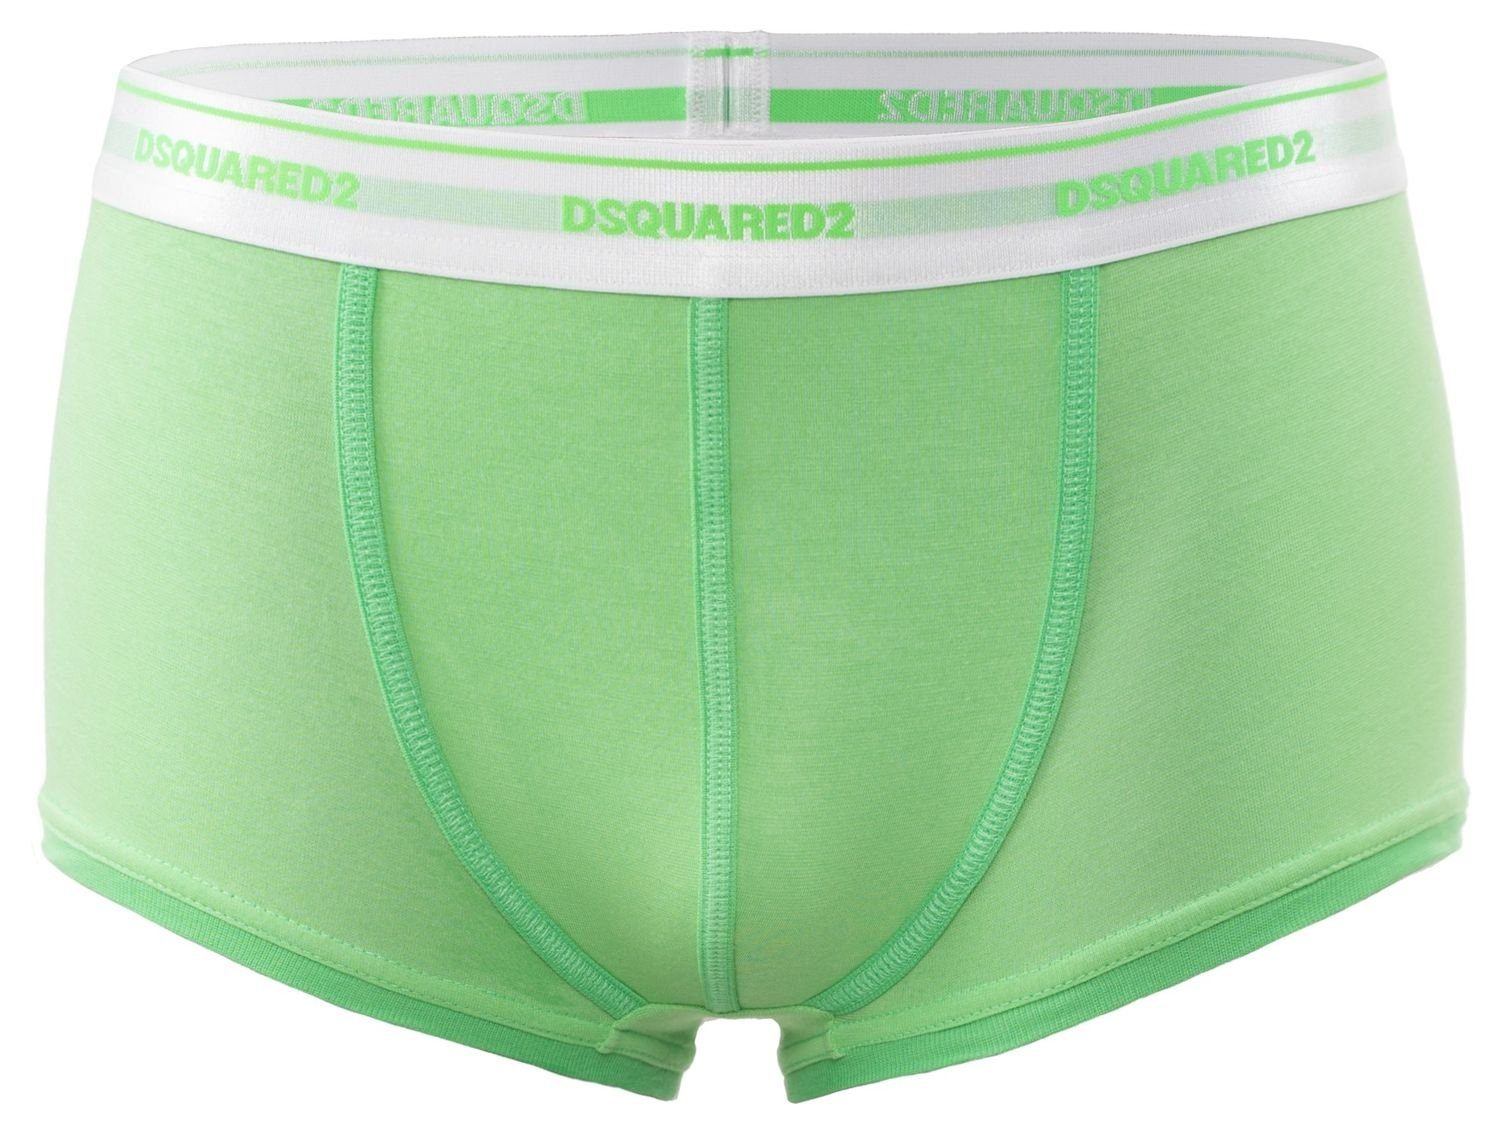 Dsquared2 Trunk Dsquared2 Boxershorts / Pants / Shorts / Boxer in grün Größe S / M / L / XL / XXL (1-St)